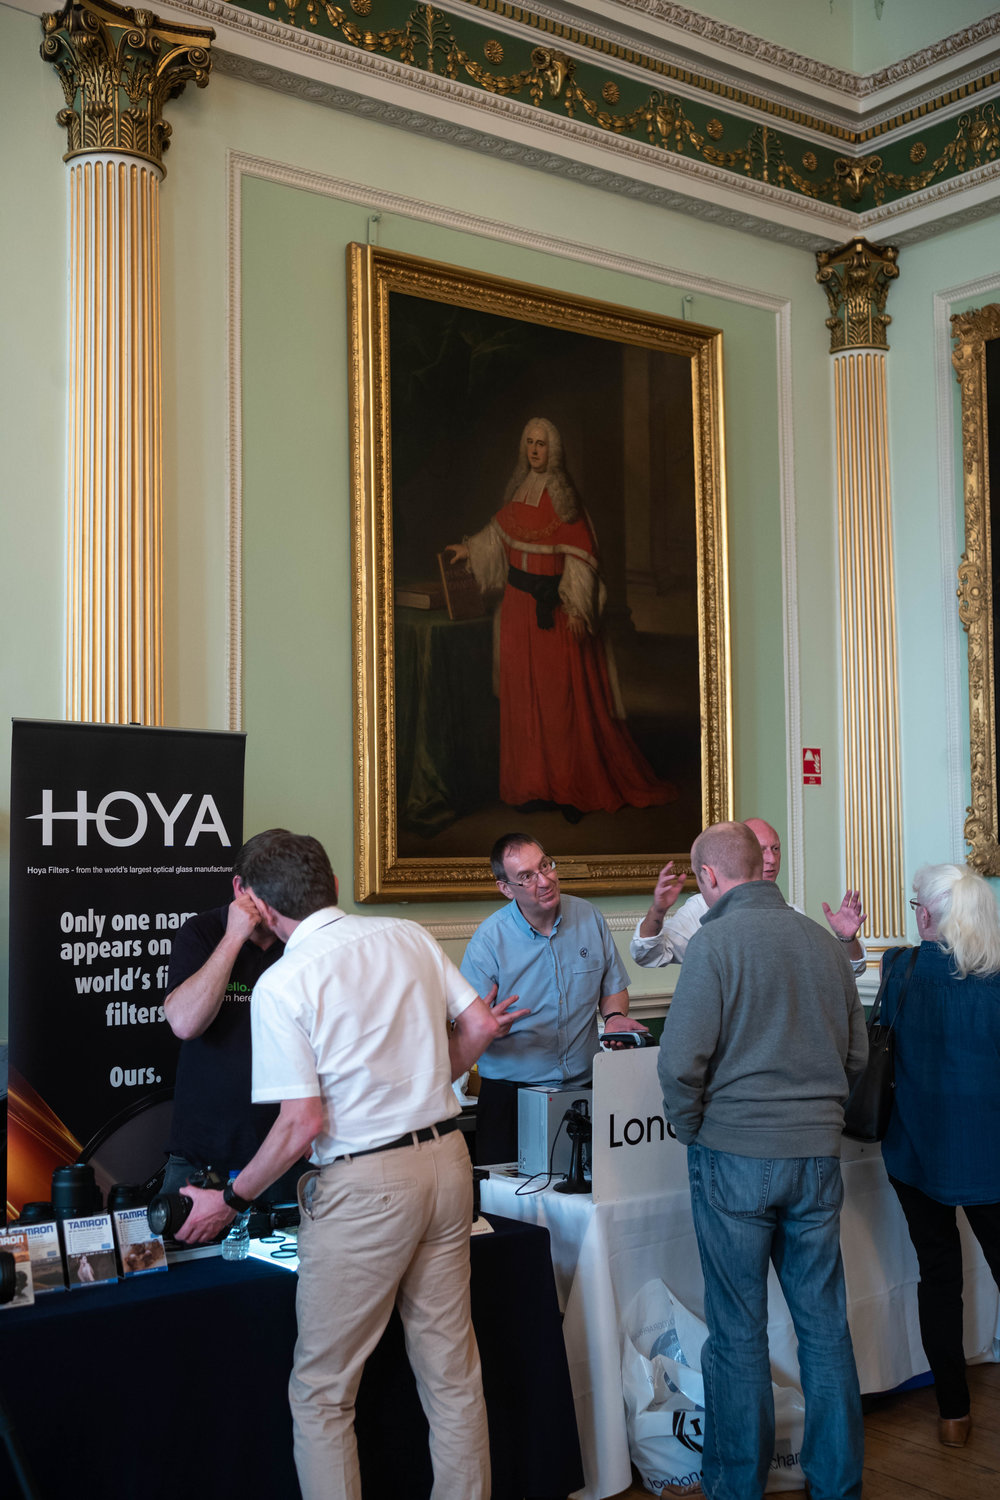  Hoya, not Goya 